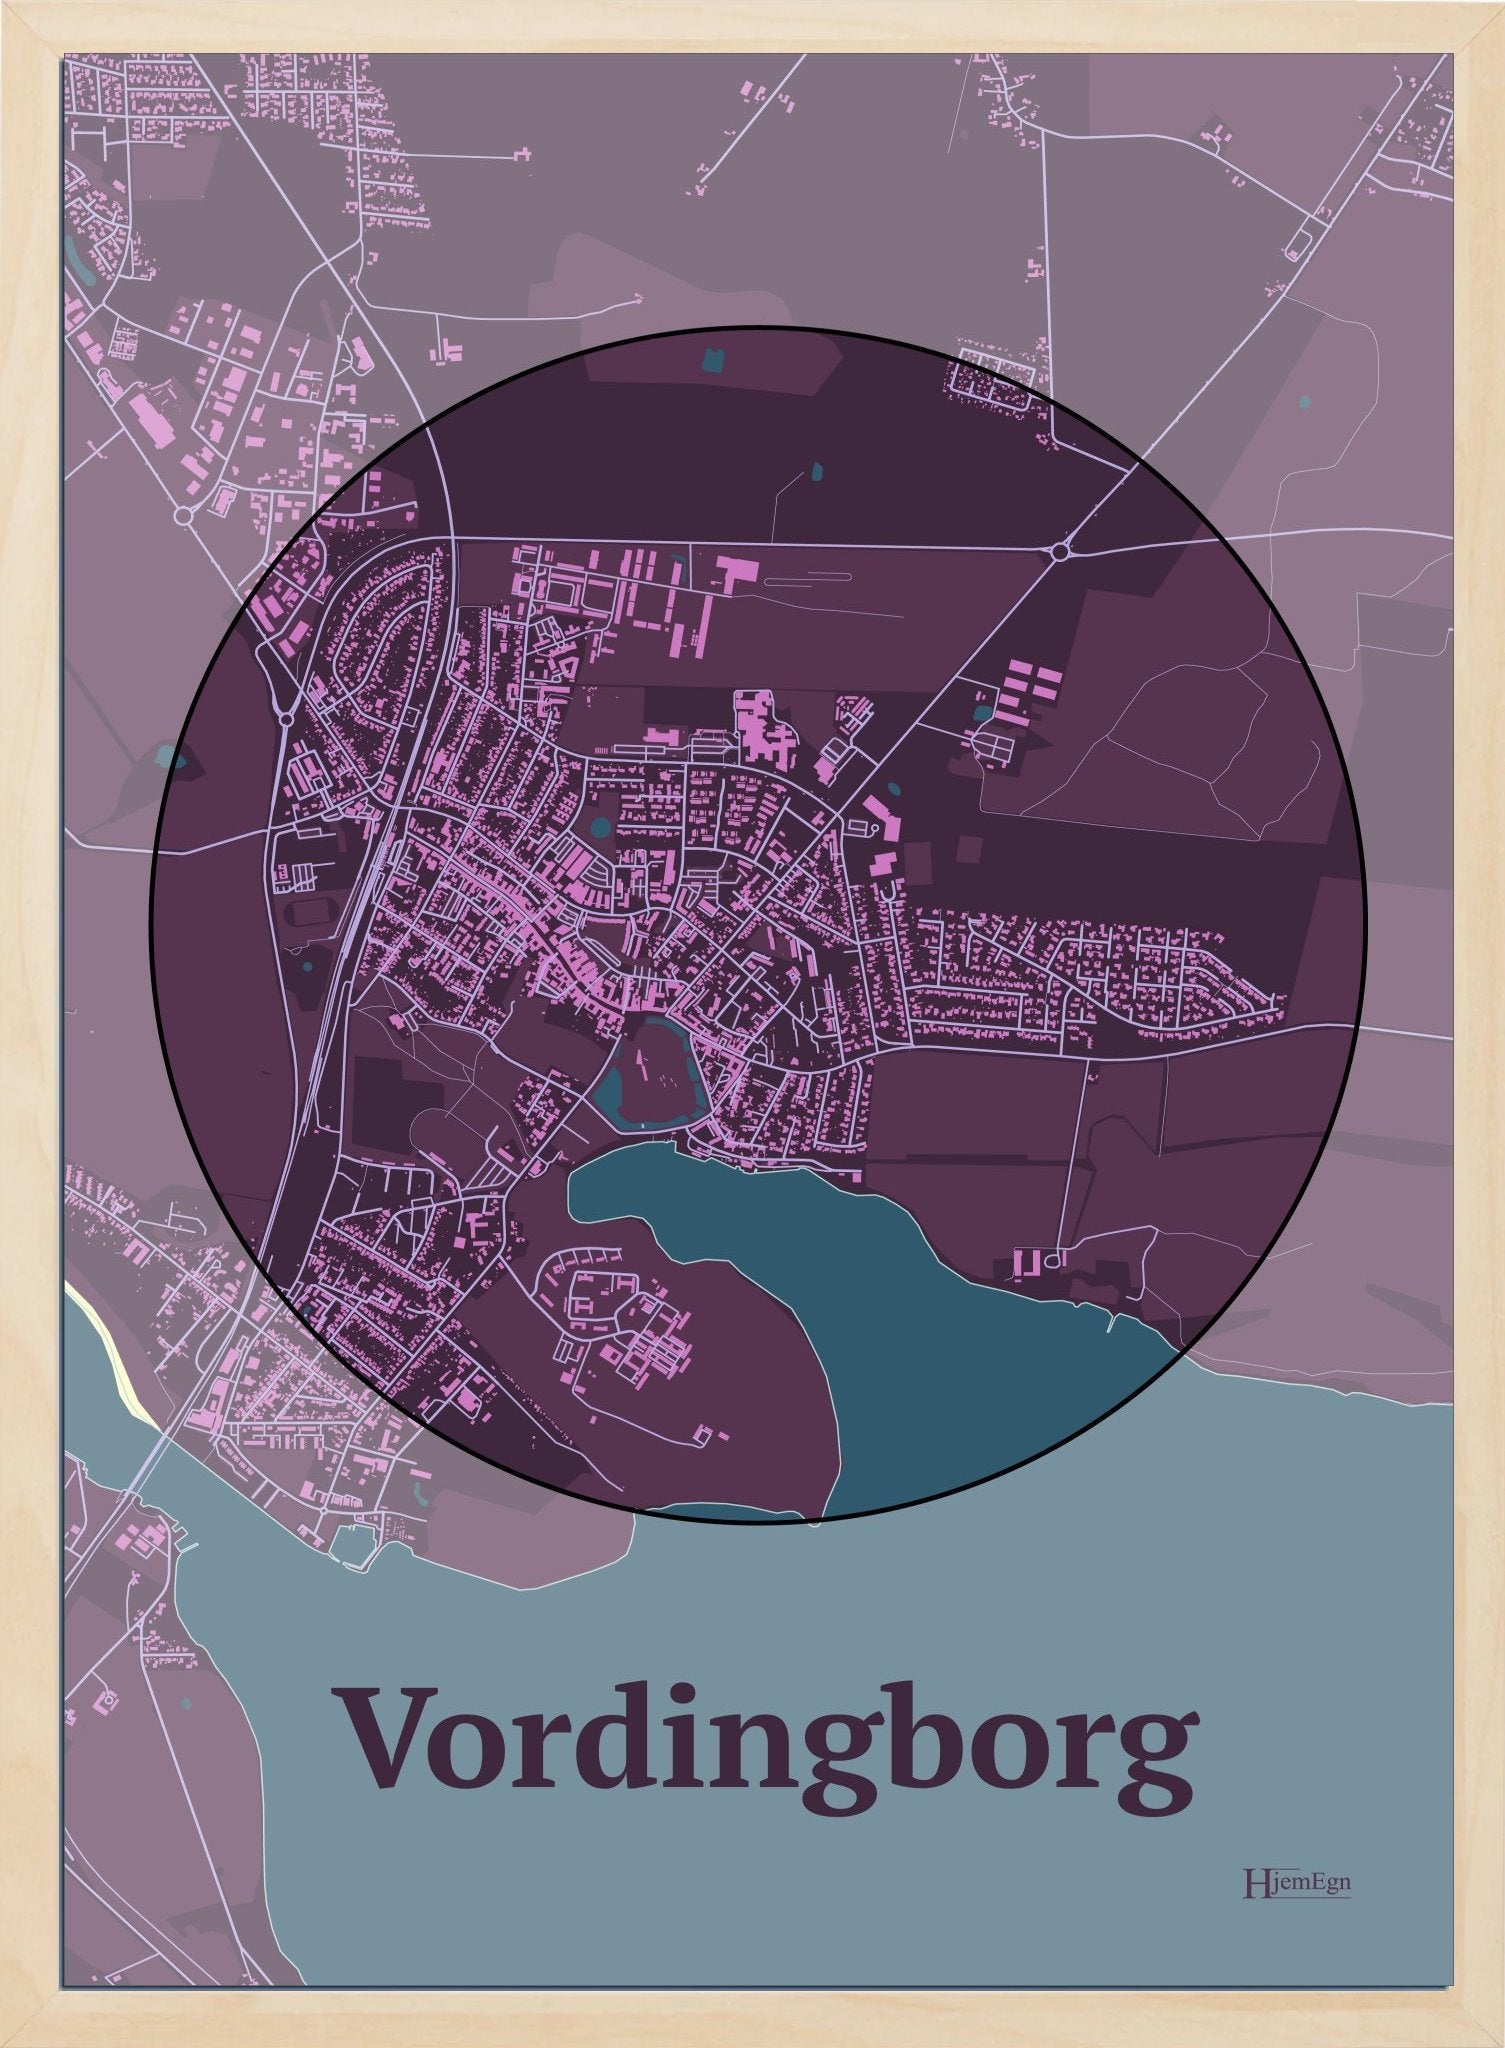 Vordingborg plakat i farve mørk rød og HjemEgn.dk design centrum. Design bykort for Vordingborg